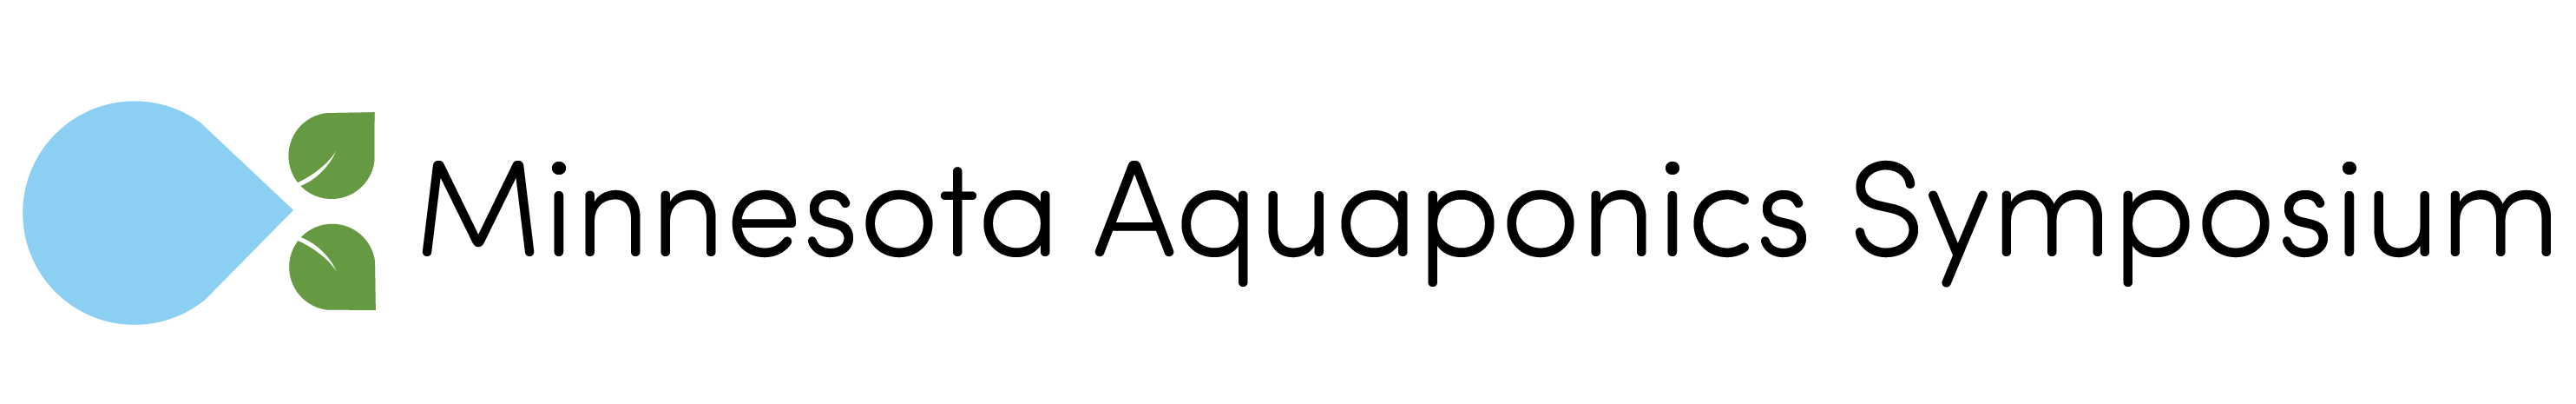 MN aquaponics symposium plus logo